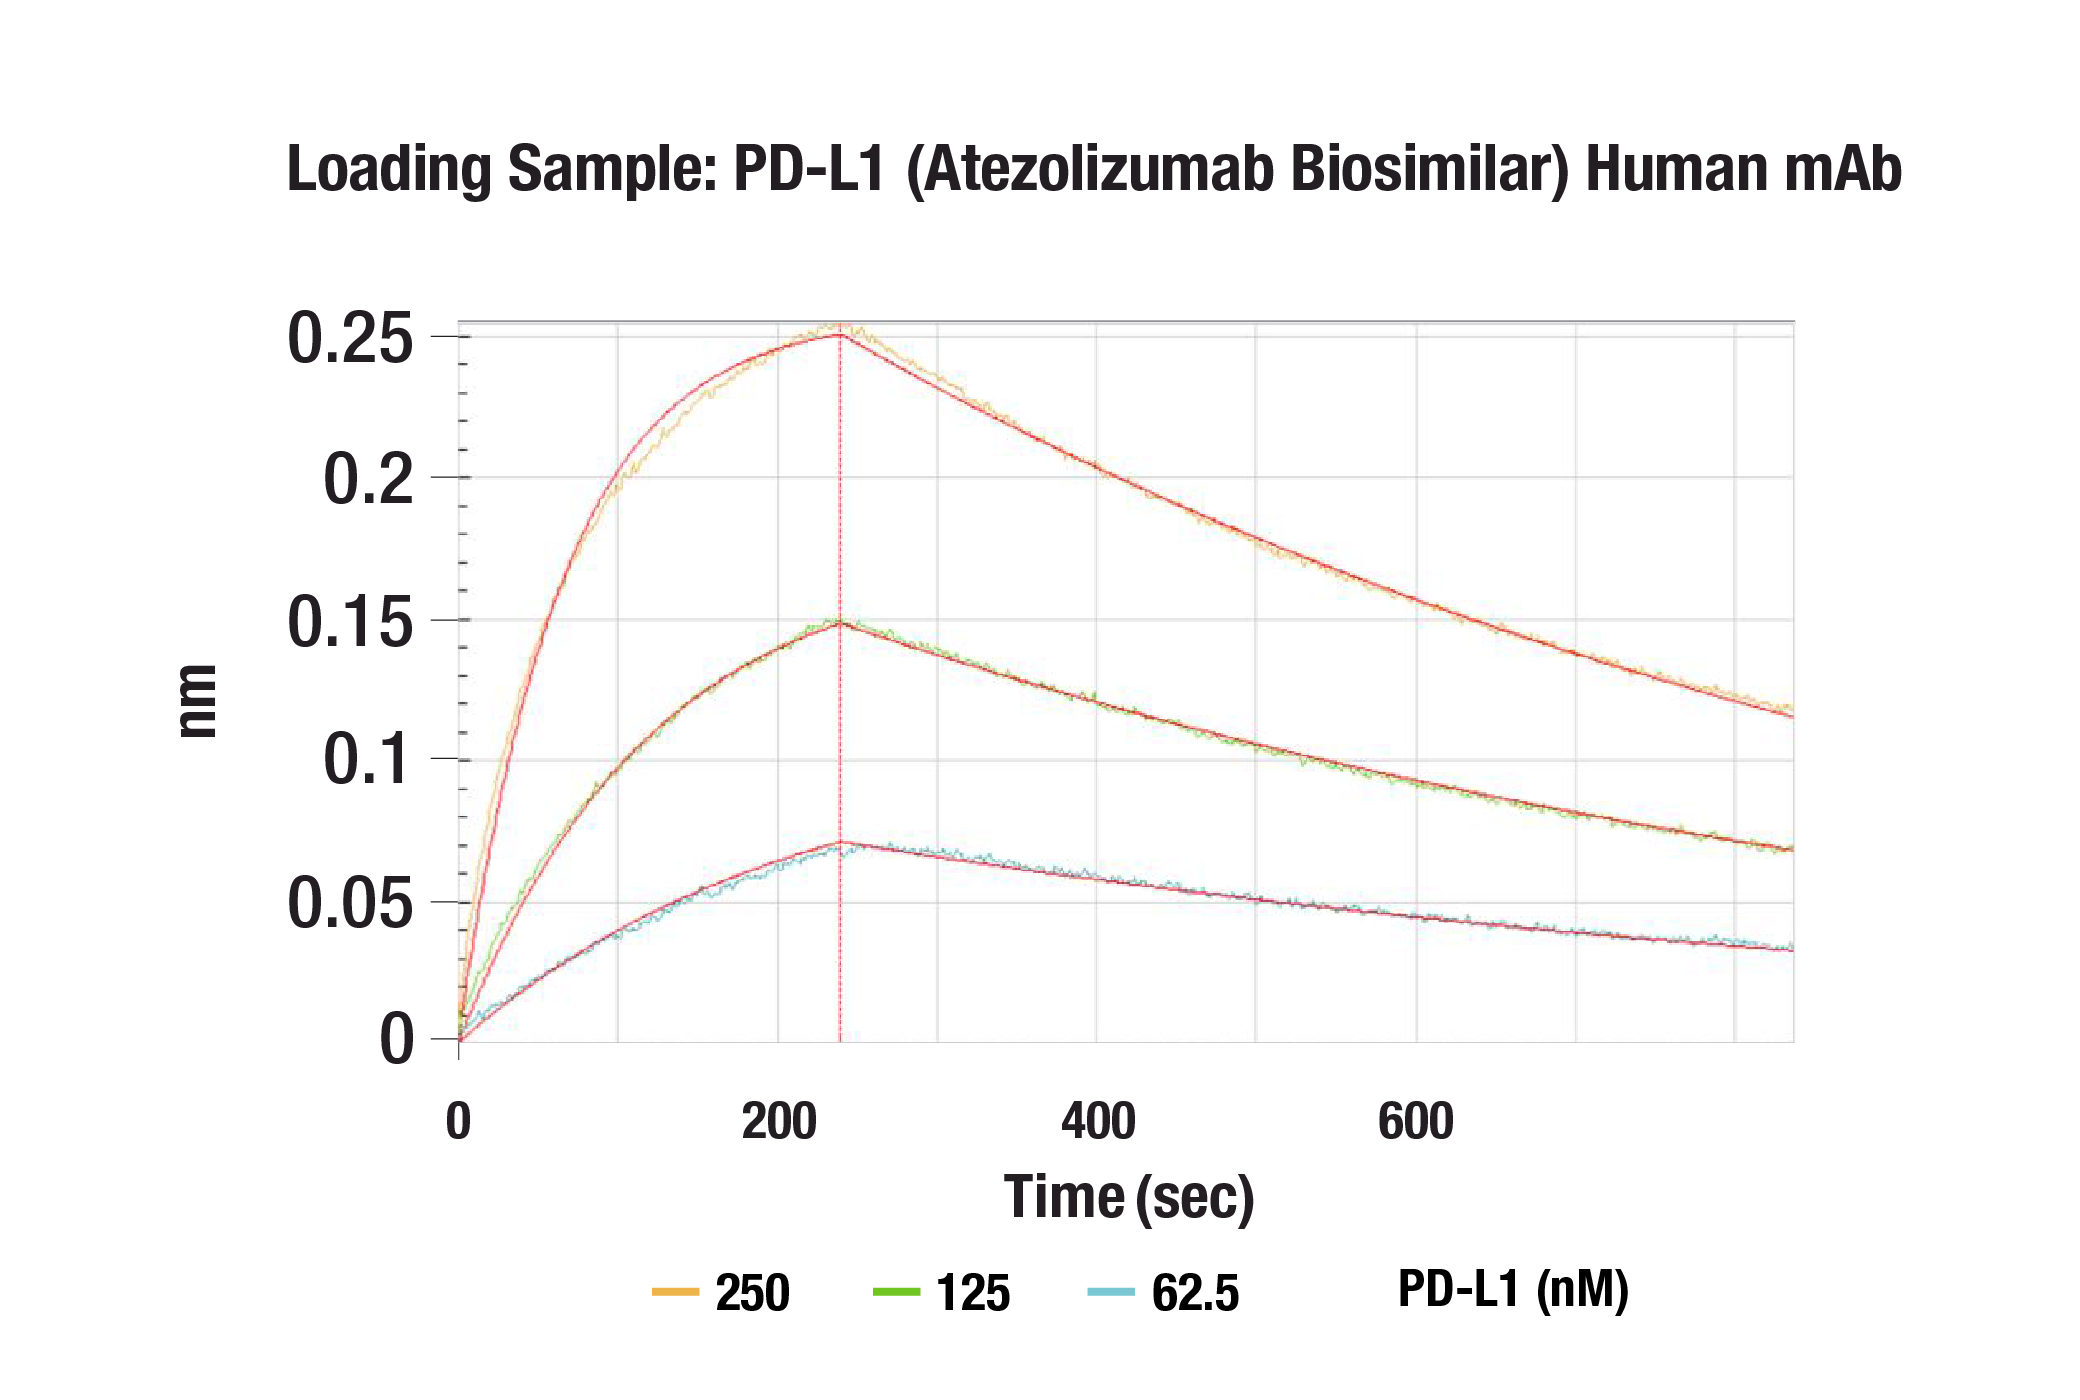  Image 1: PD-L1 (Atezolizumab Biosimilar) Human mAb